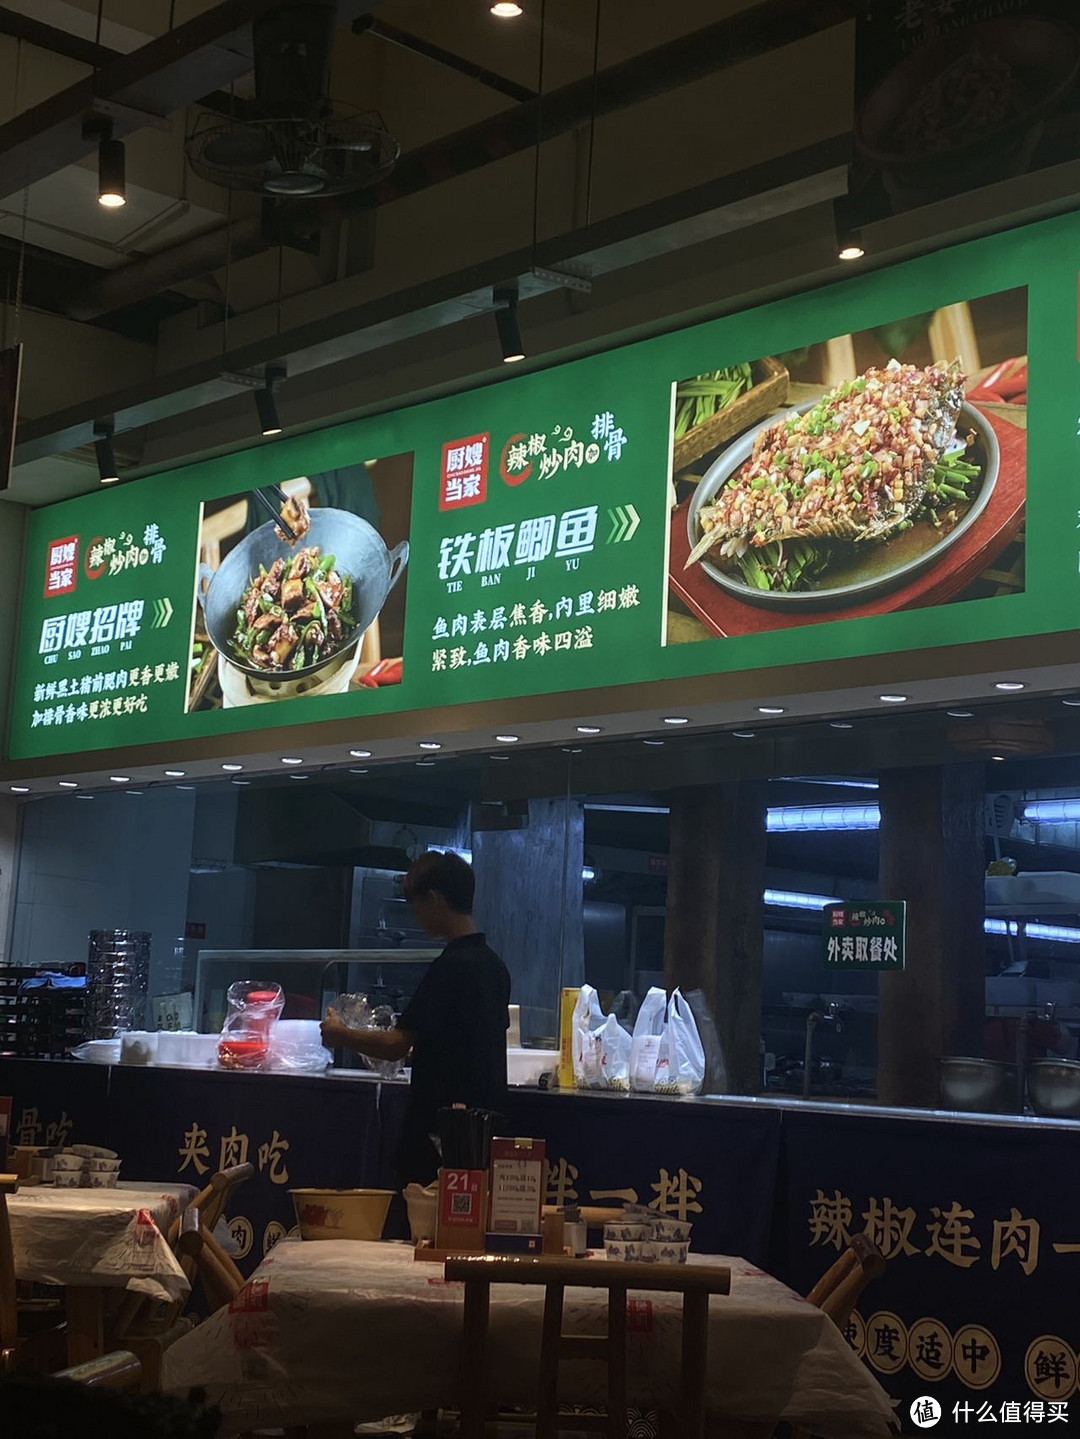 湖南菜是中国八大菜系之一